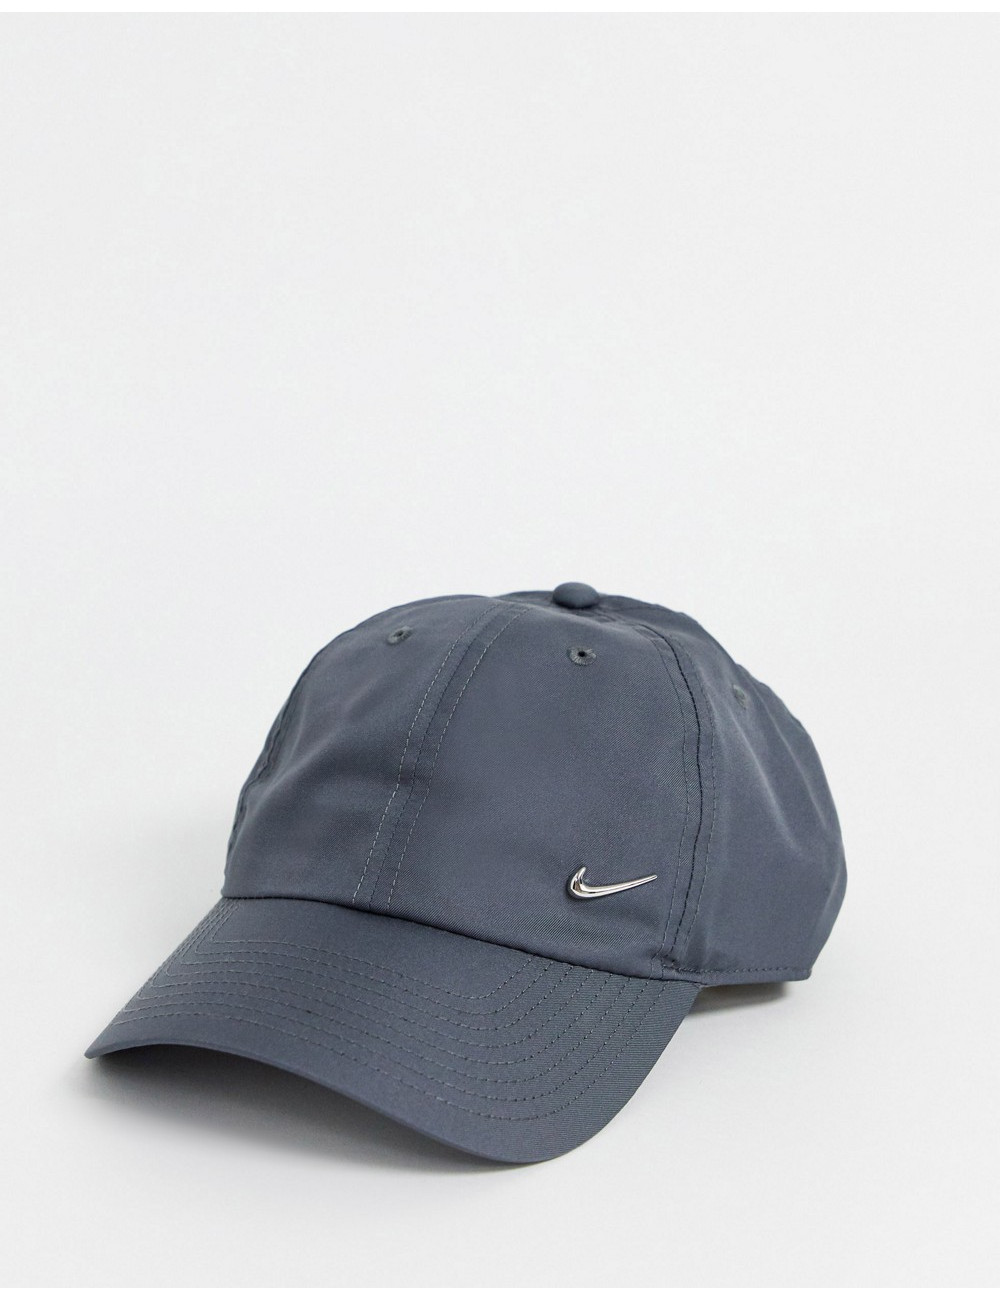 Nike metal swoosh cap in grey